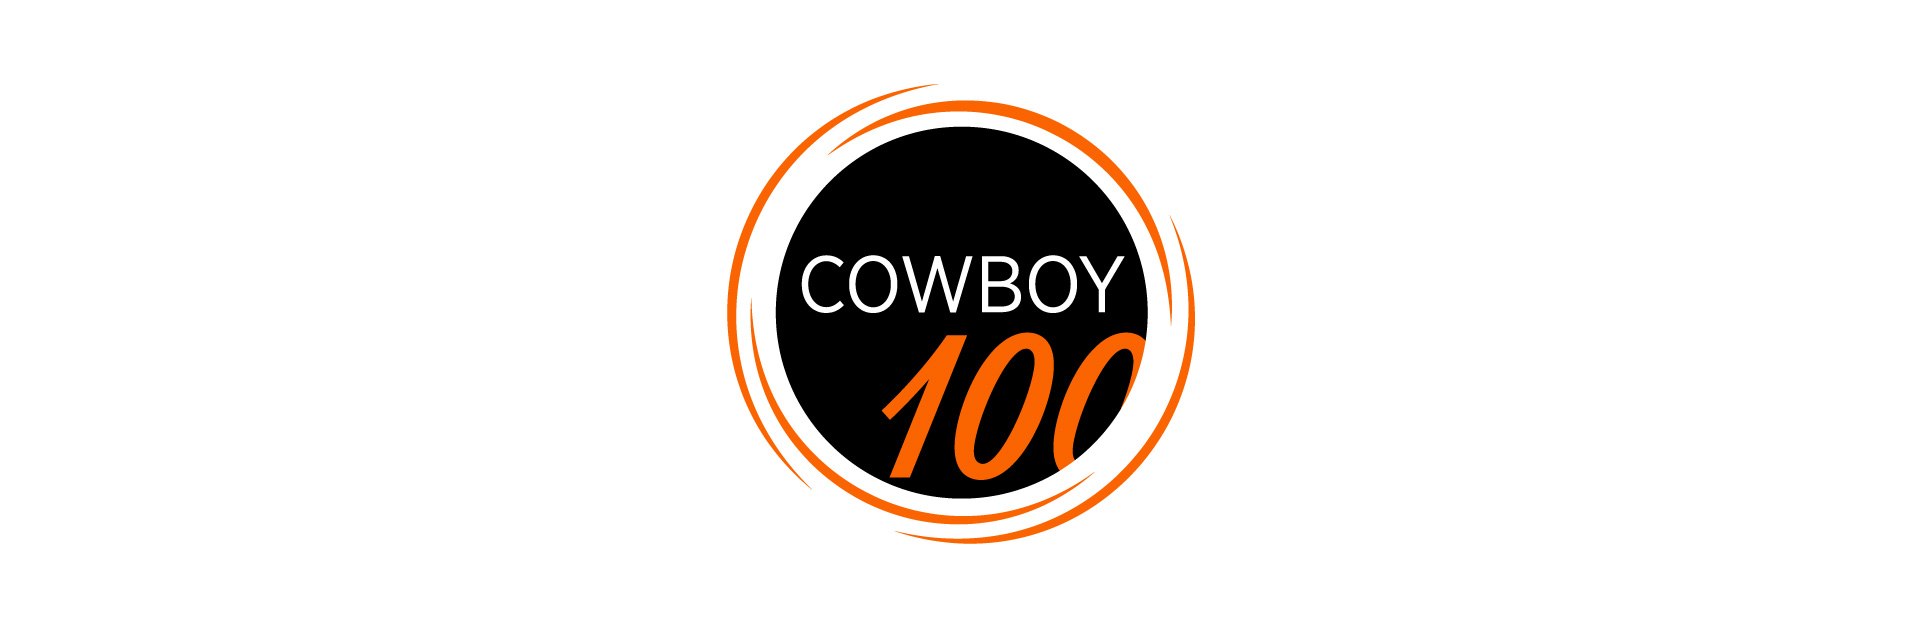 Inaugural Cowboy100 event announced